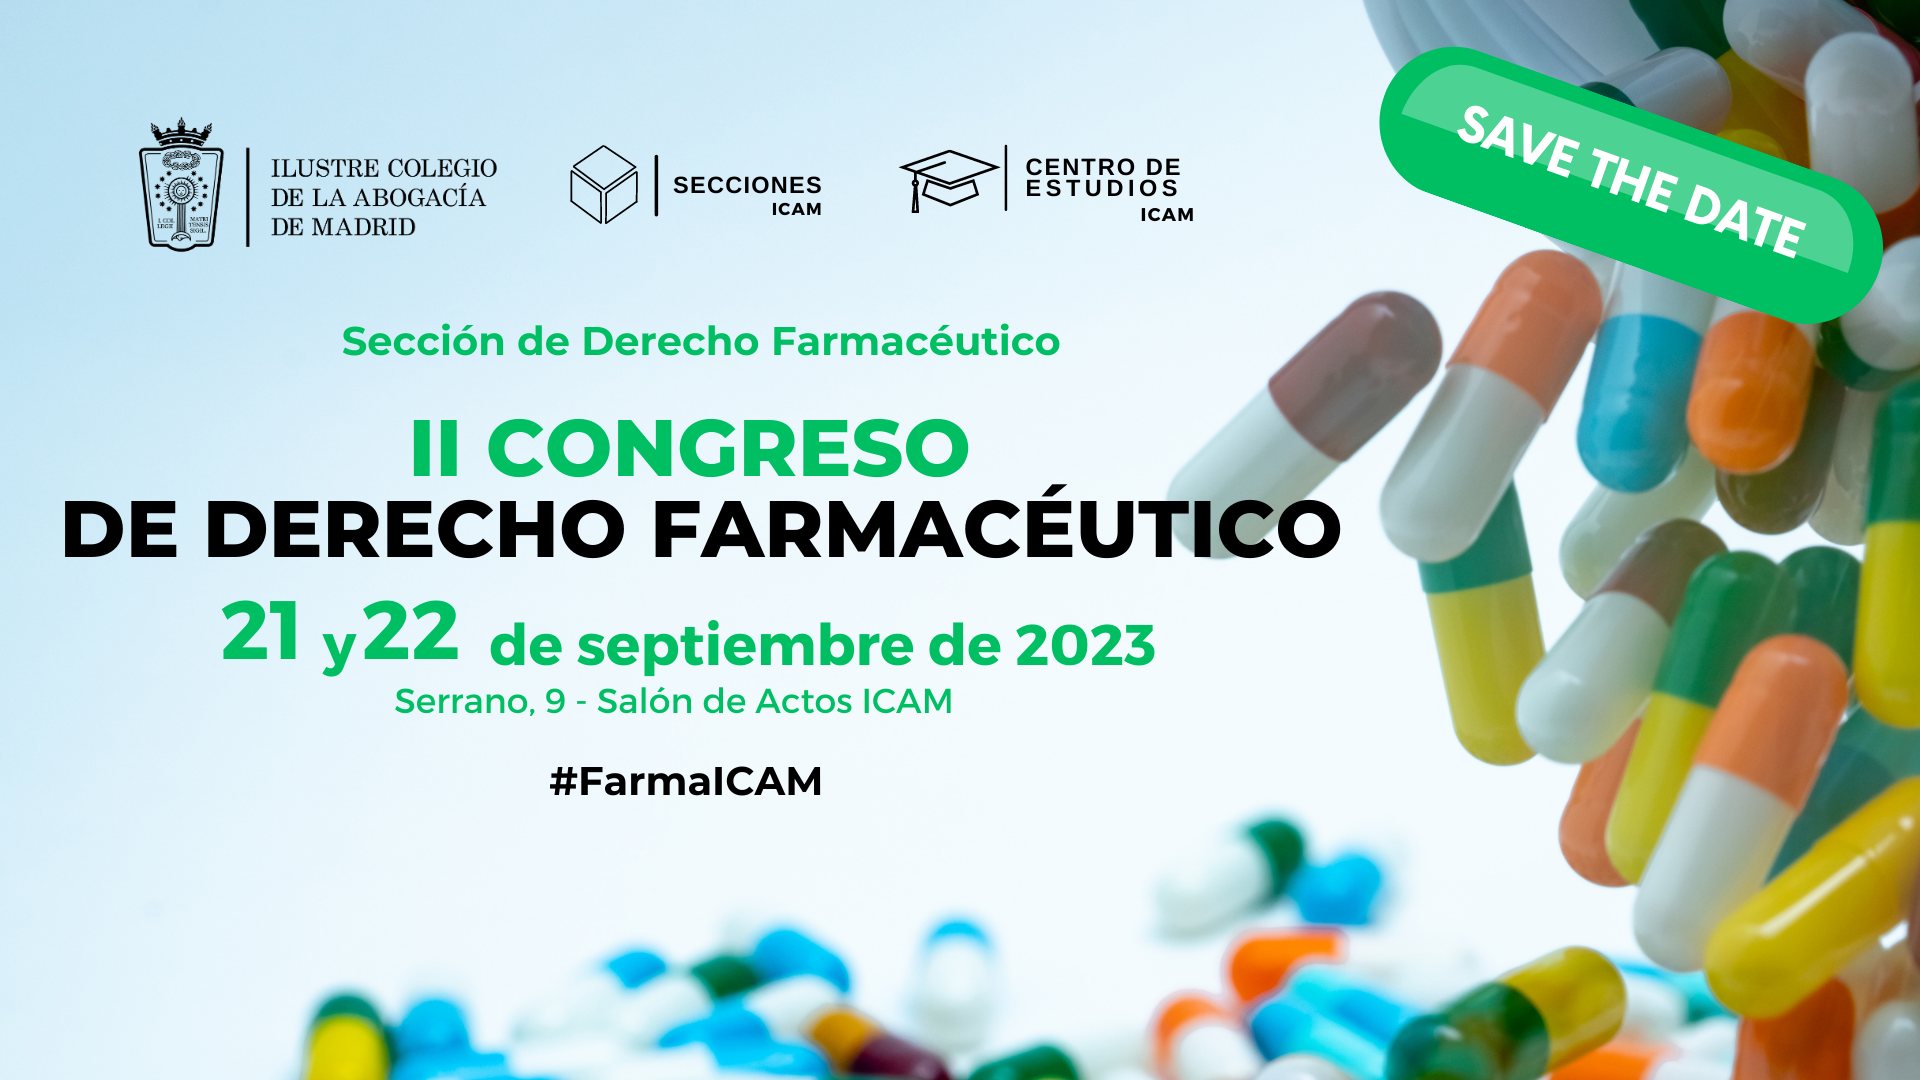 SAVE THE DATE | Los días 21 y 22 de septiembre se celebrará el II Congreso de Derecho Farmacéutico del ICAM